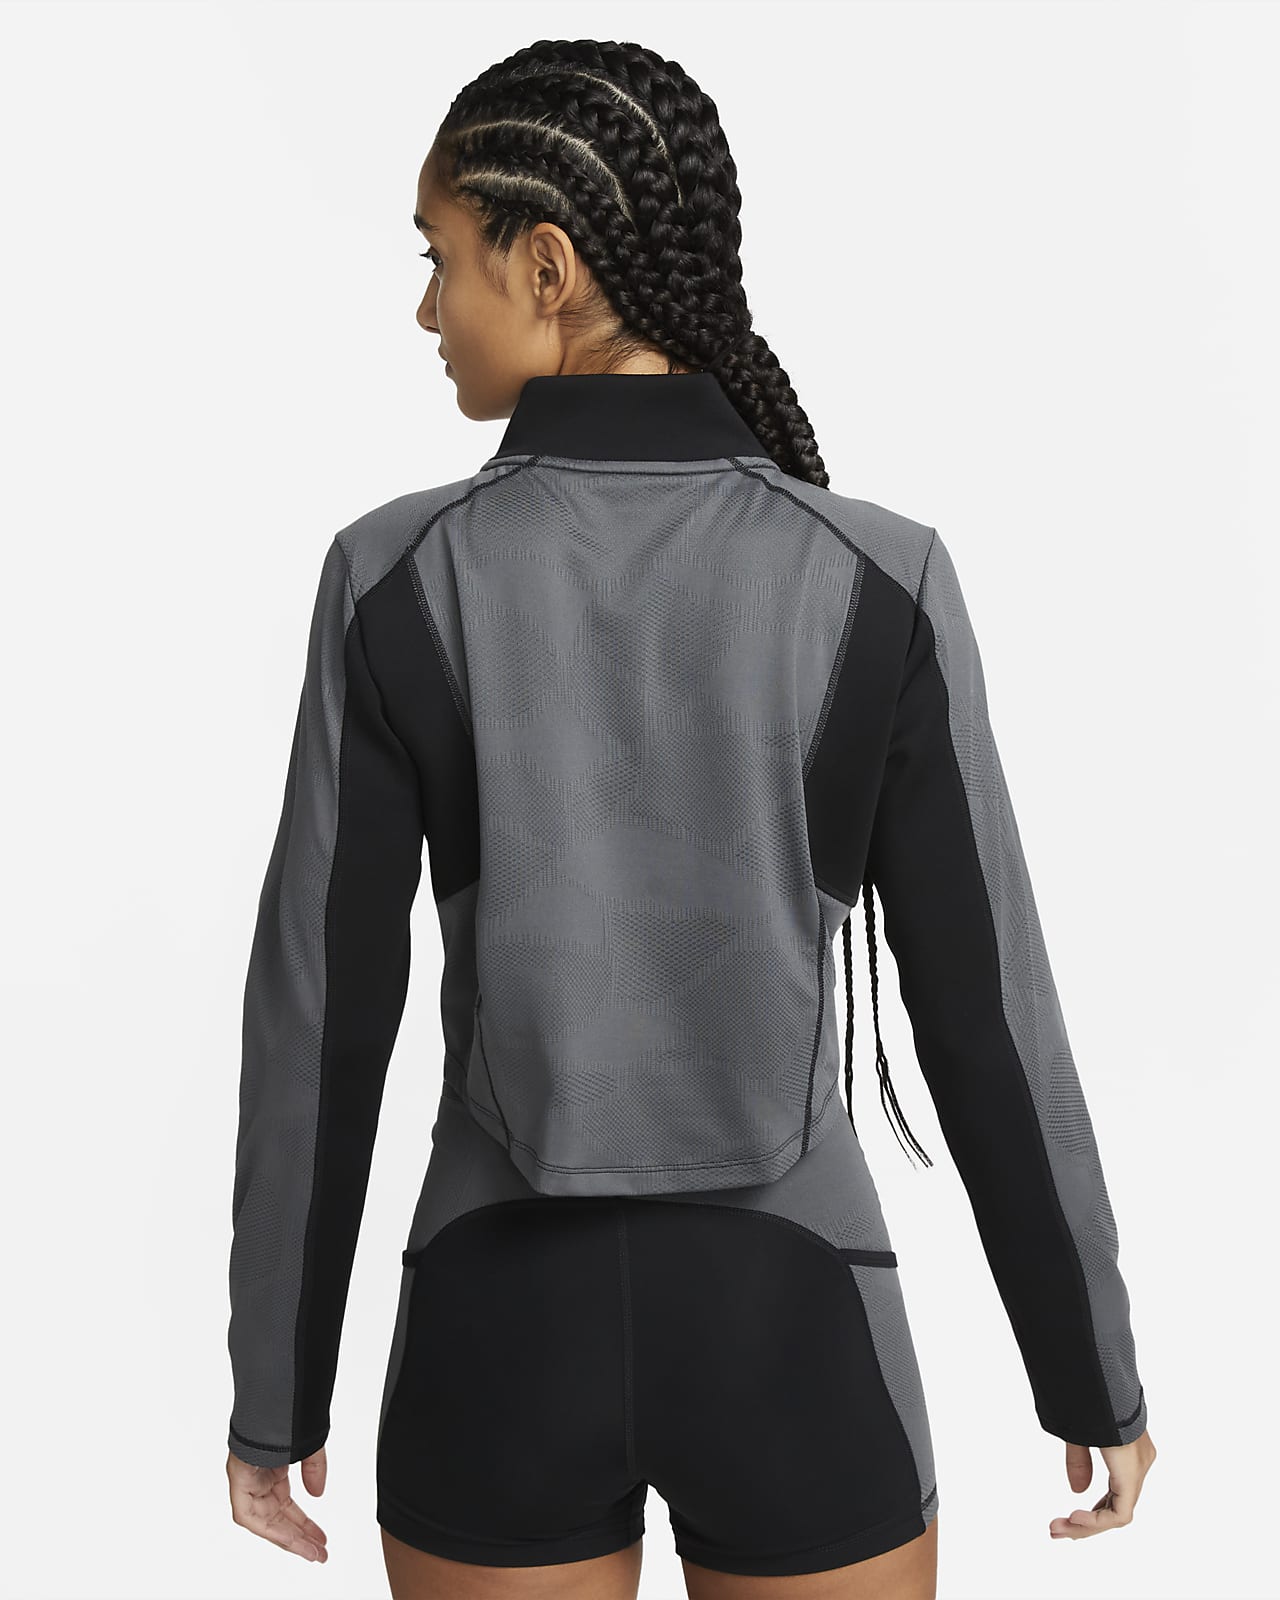 Nike Dri-FIT Women's Long-Sleeve 1/4-Zip Training Top.